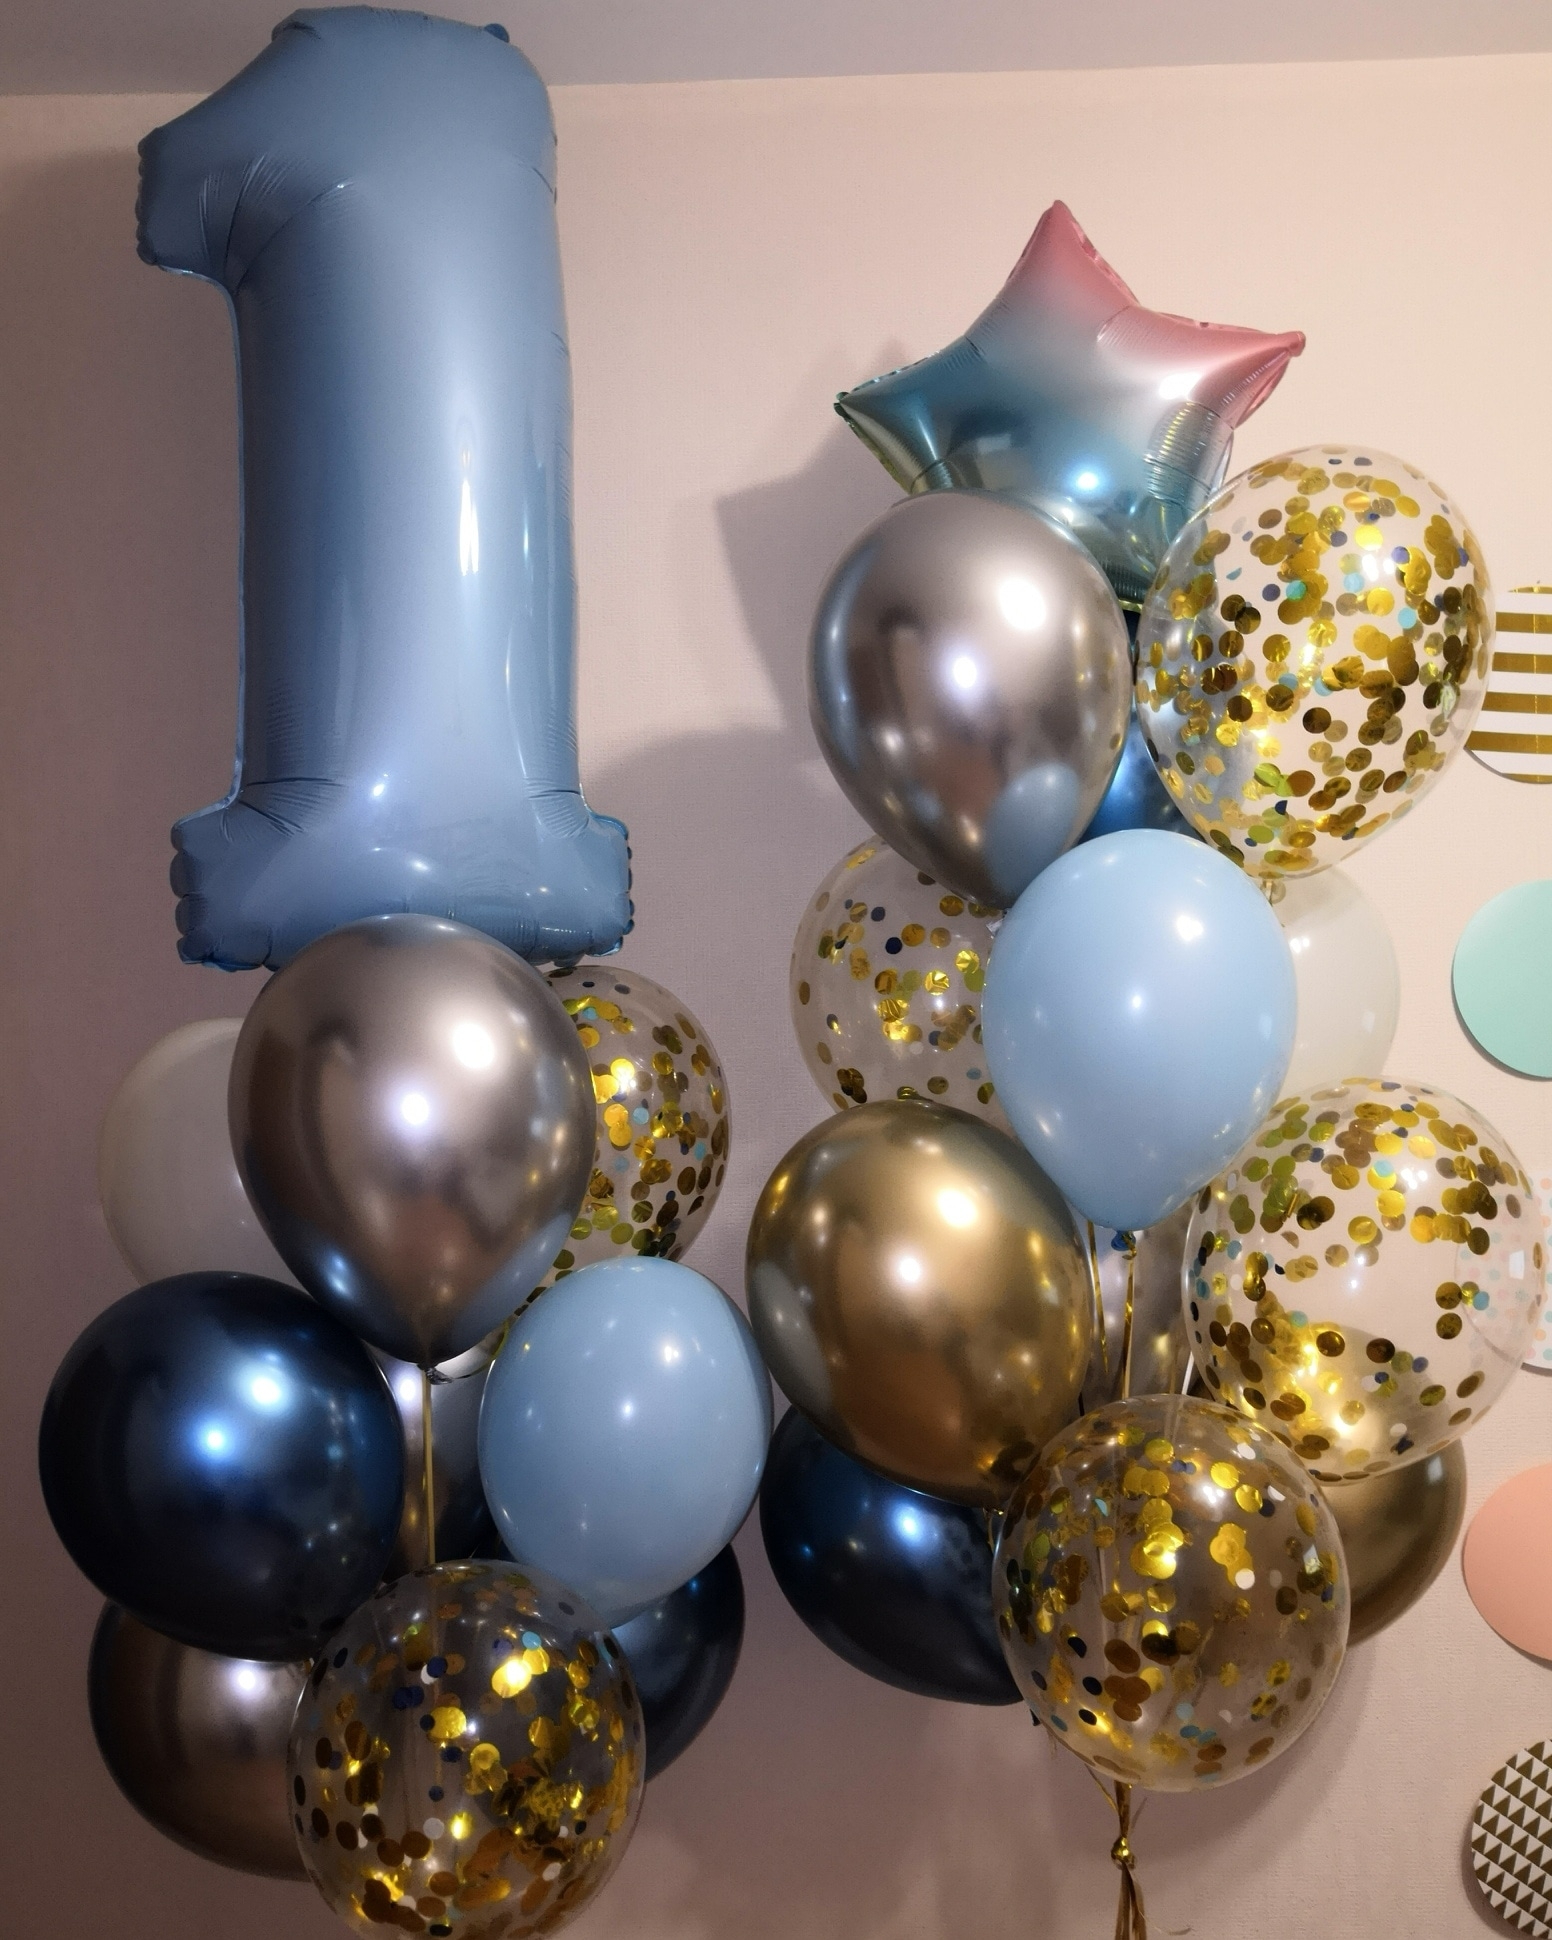 оформление шарами на день рождения мальчика 1 год